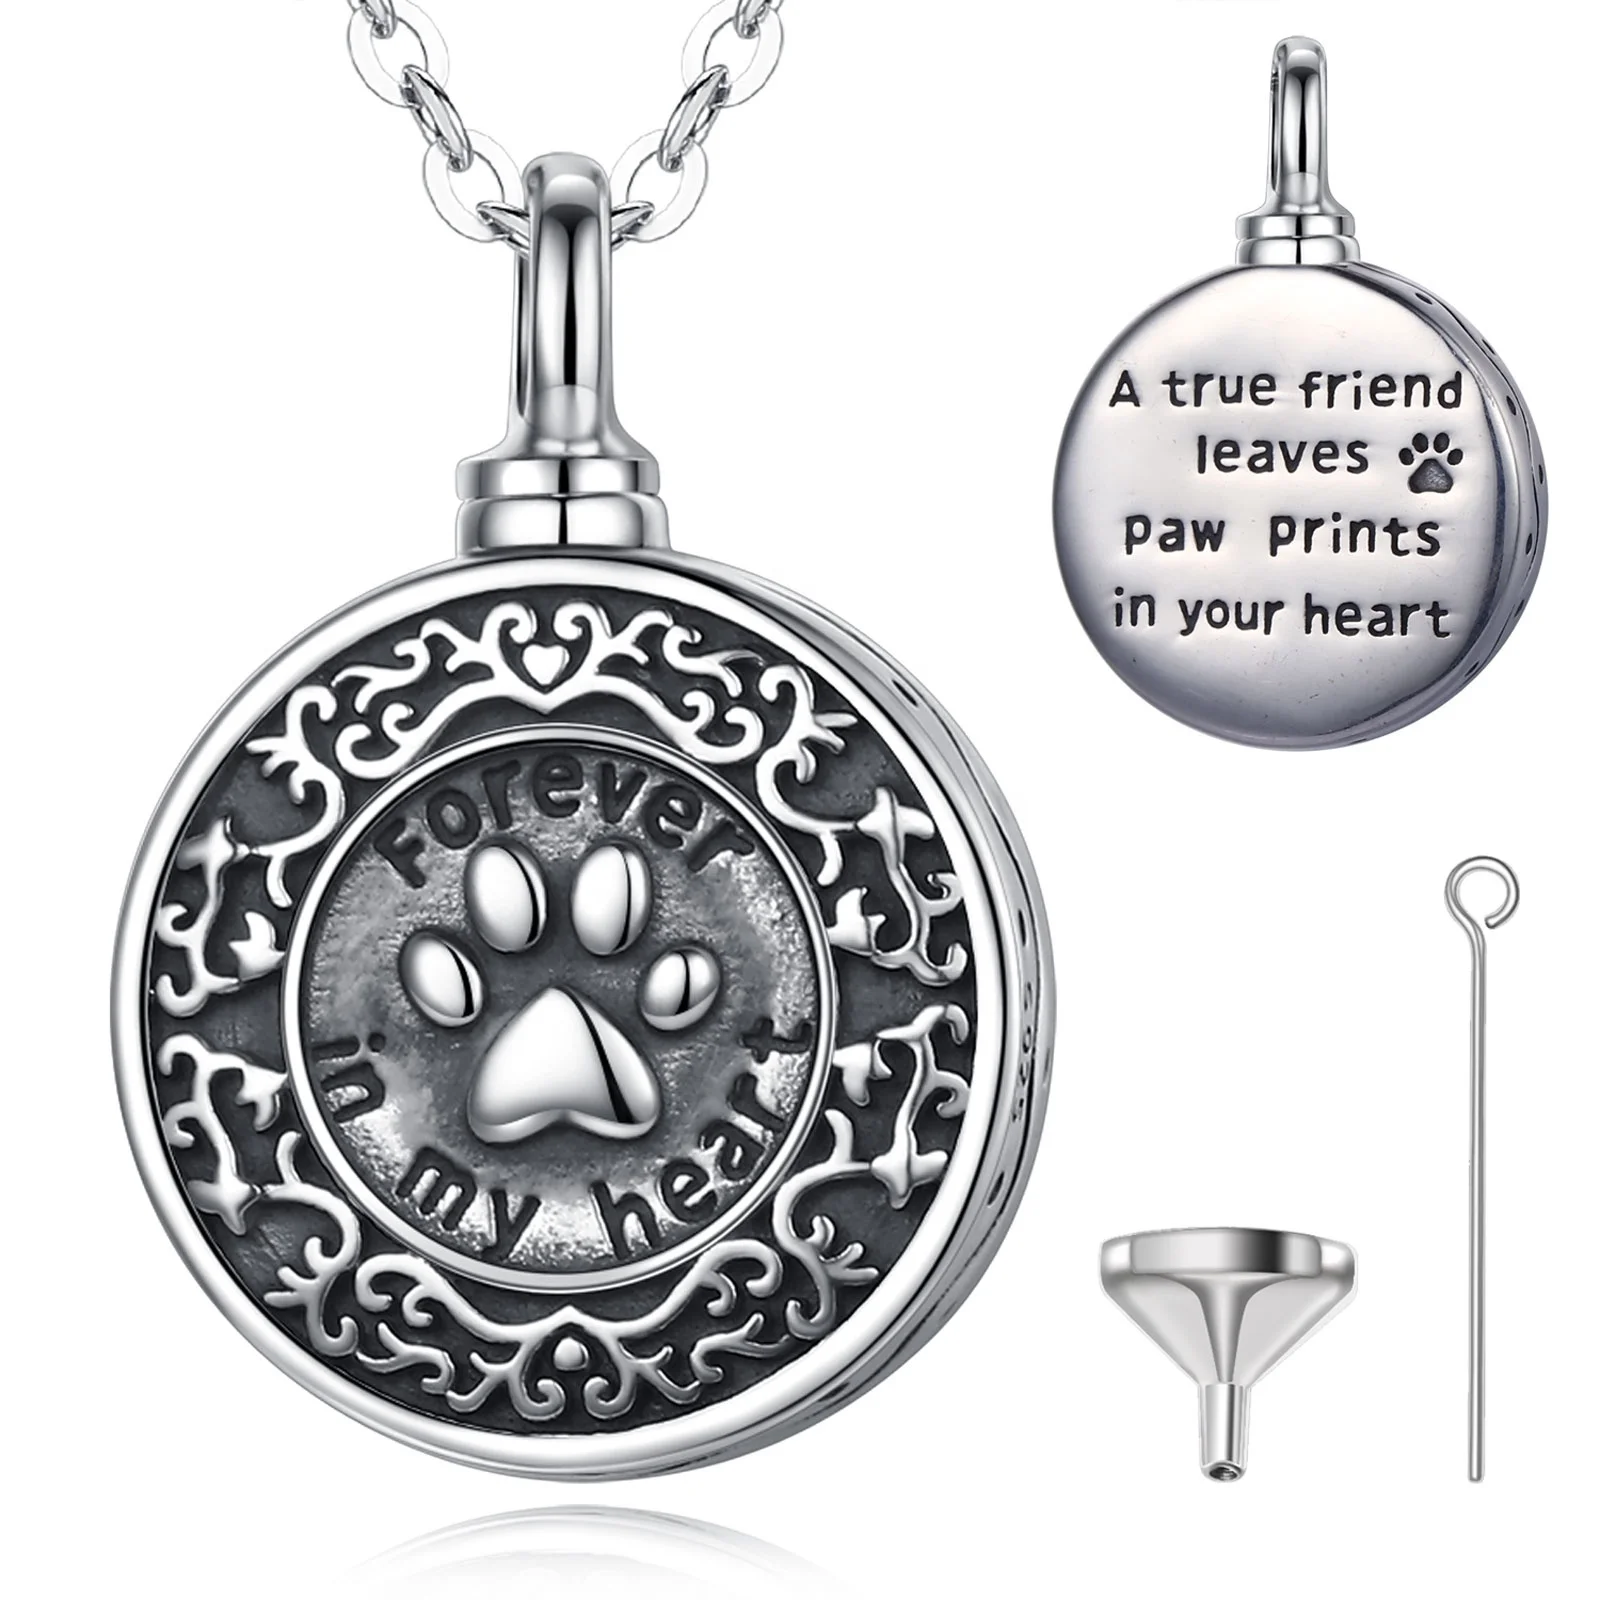 Животное лапа s925 серебро ПЭТ мемориальное украшение медальон для праха ожерелье